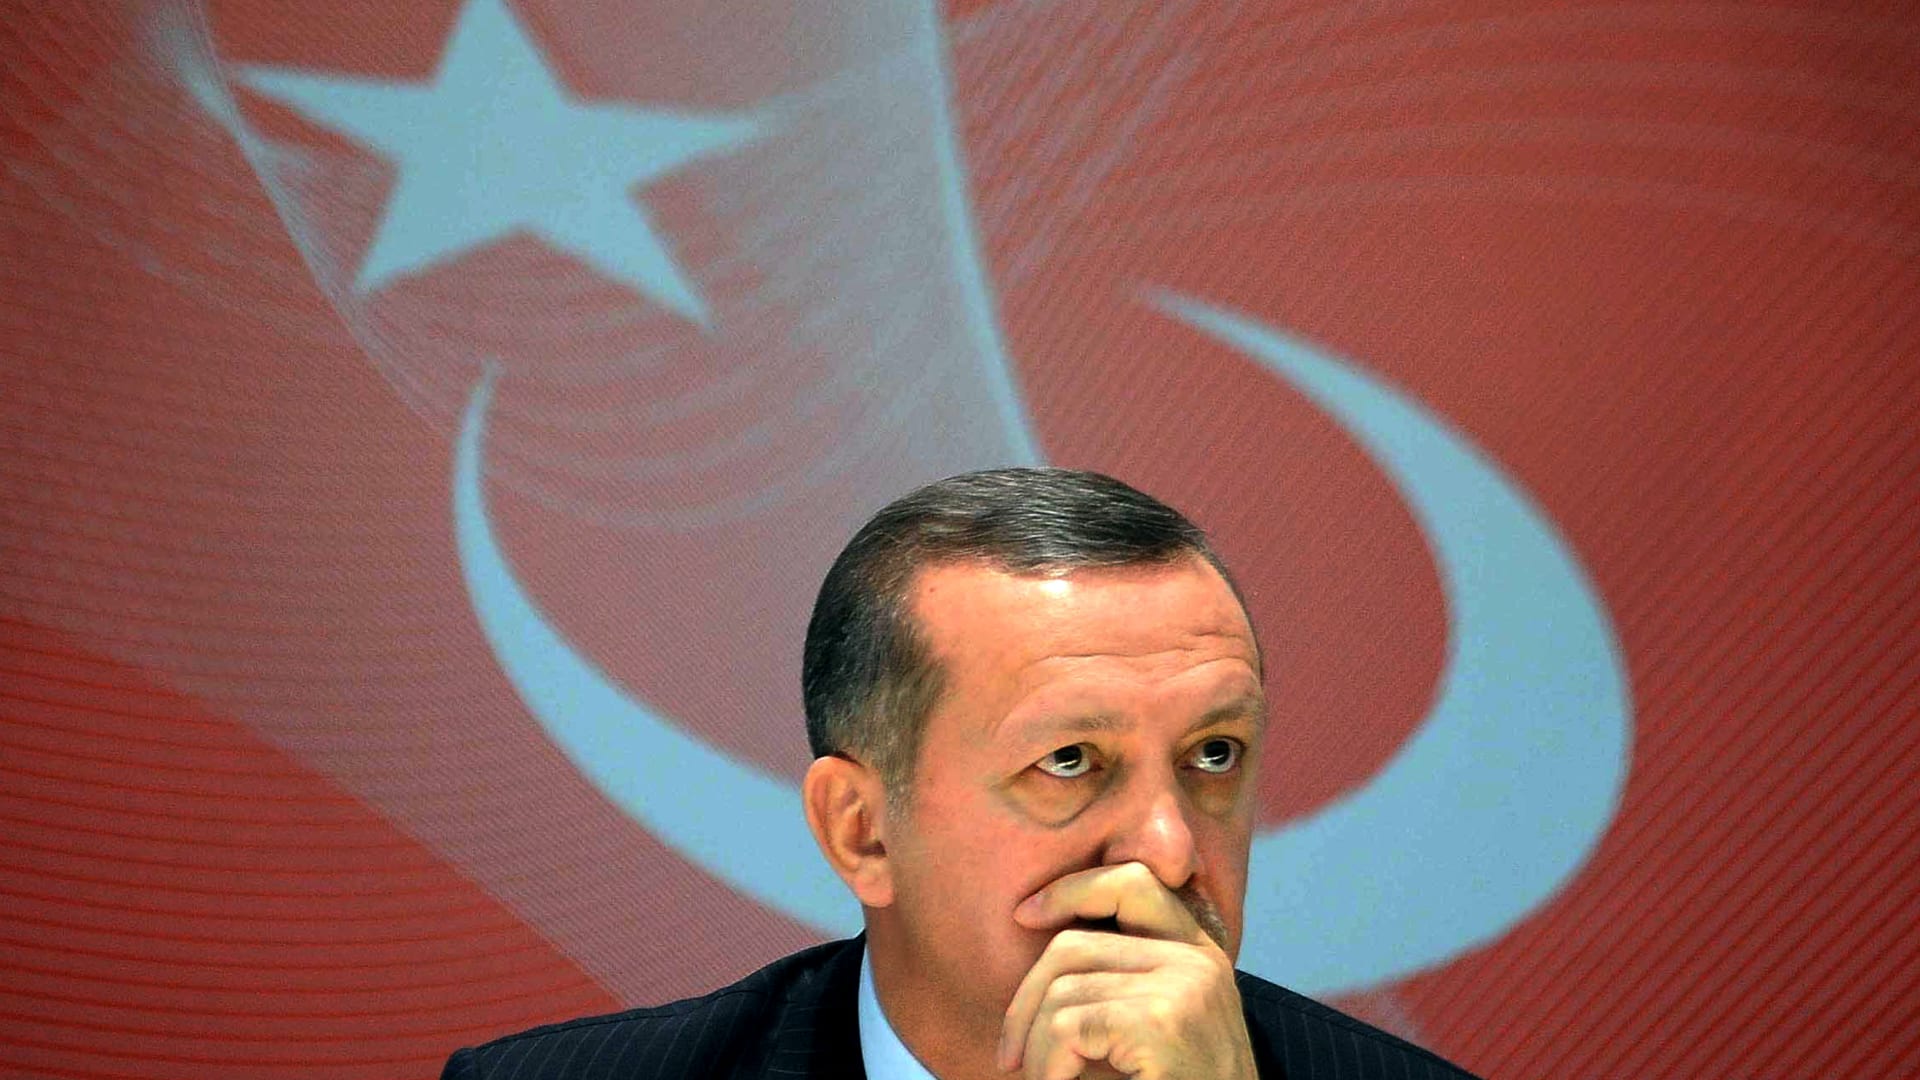 انهيارالليرة فرصة لشراء عقارات تركيا والخسائر تنتظر البائعين